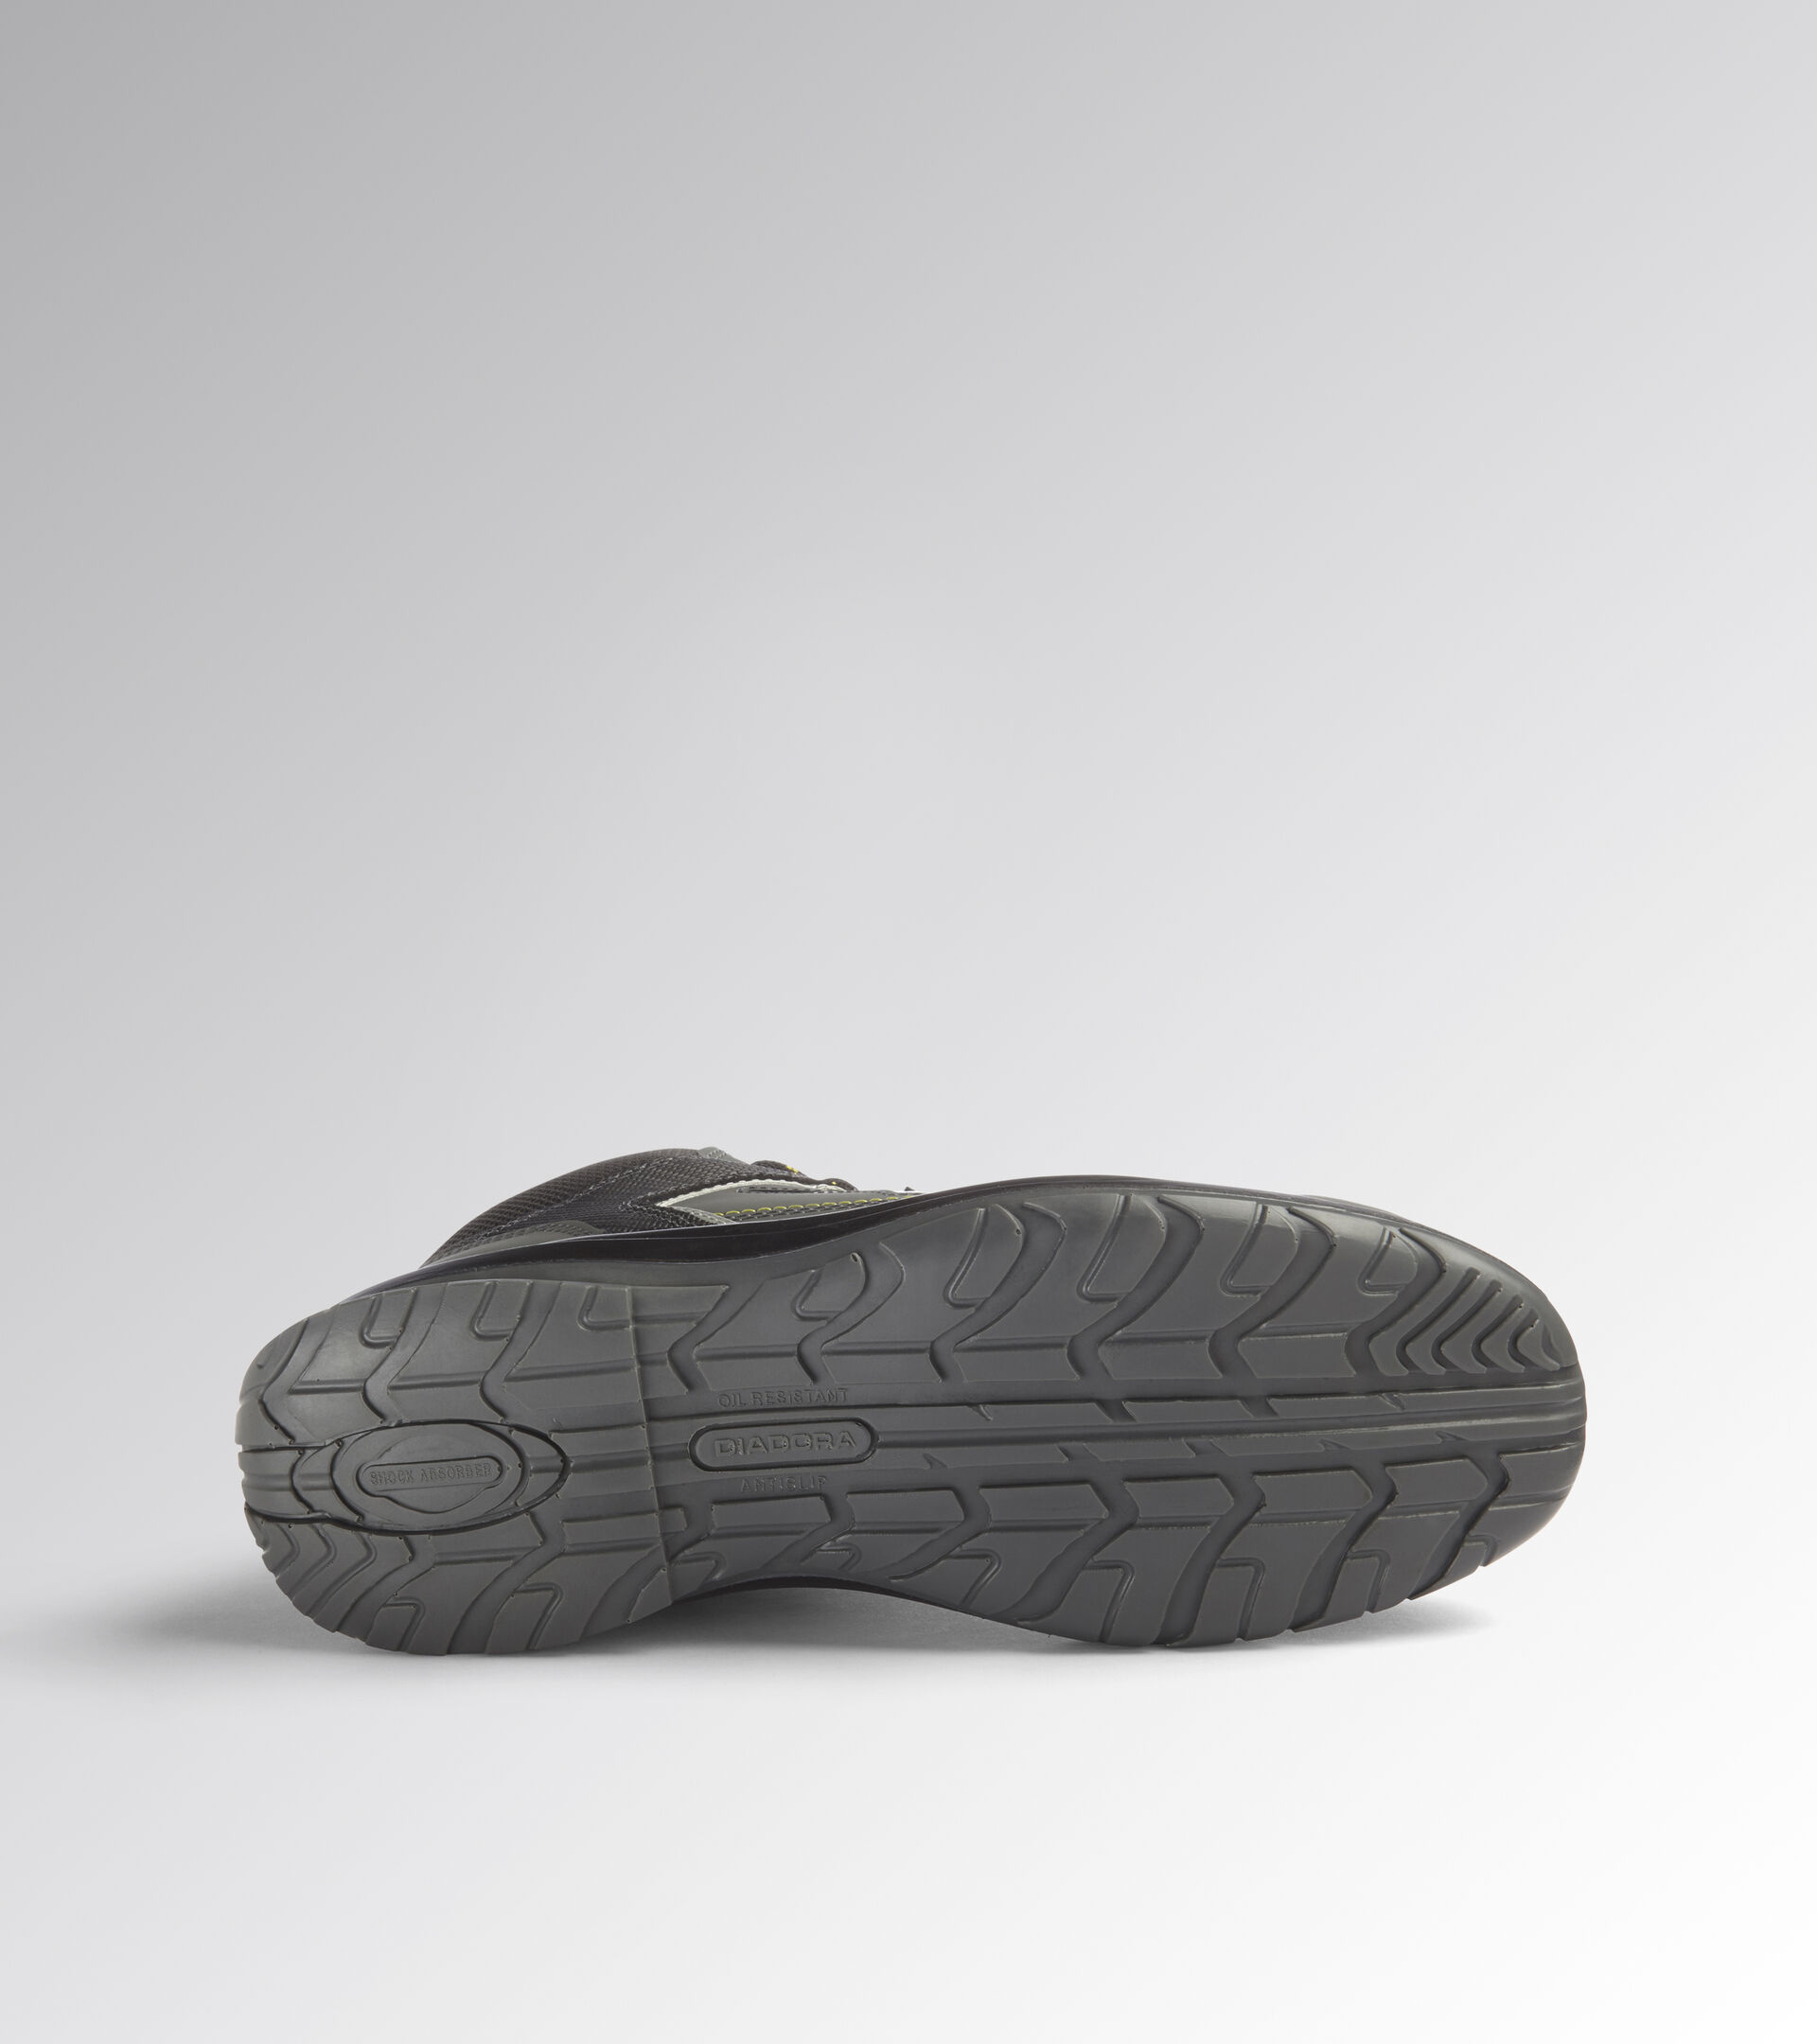 High safety shoe BLITZ MID S3 SRC CASTLE ROCK - Utility